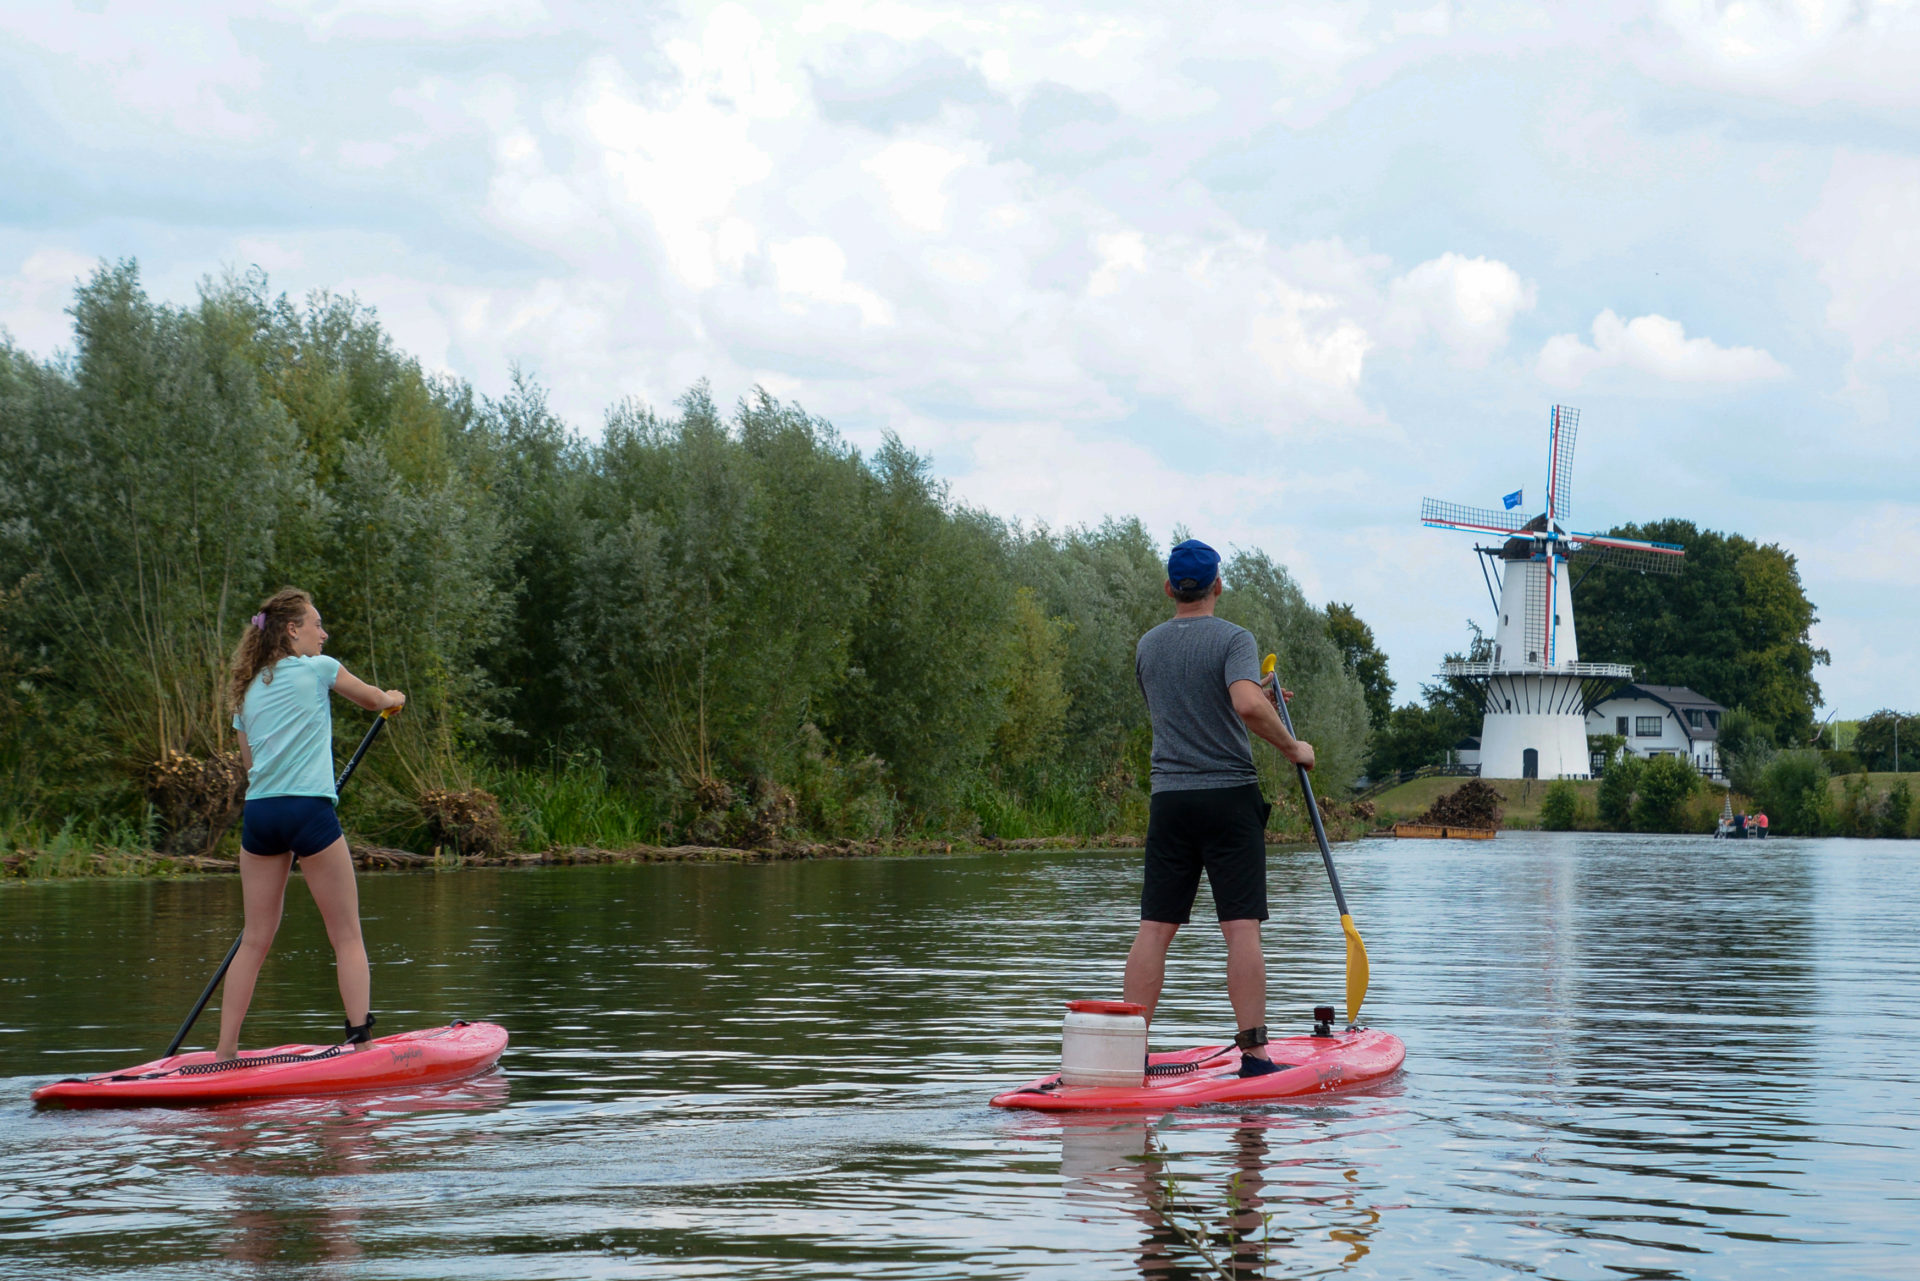 Mann und Frau auf Stand-up-paddles auf dem Fluss Linge mit Windmühle im Hintergrund